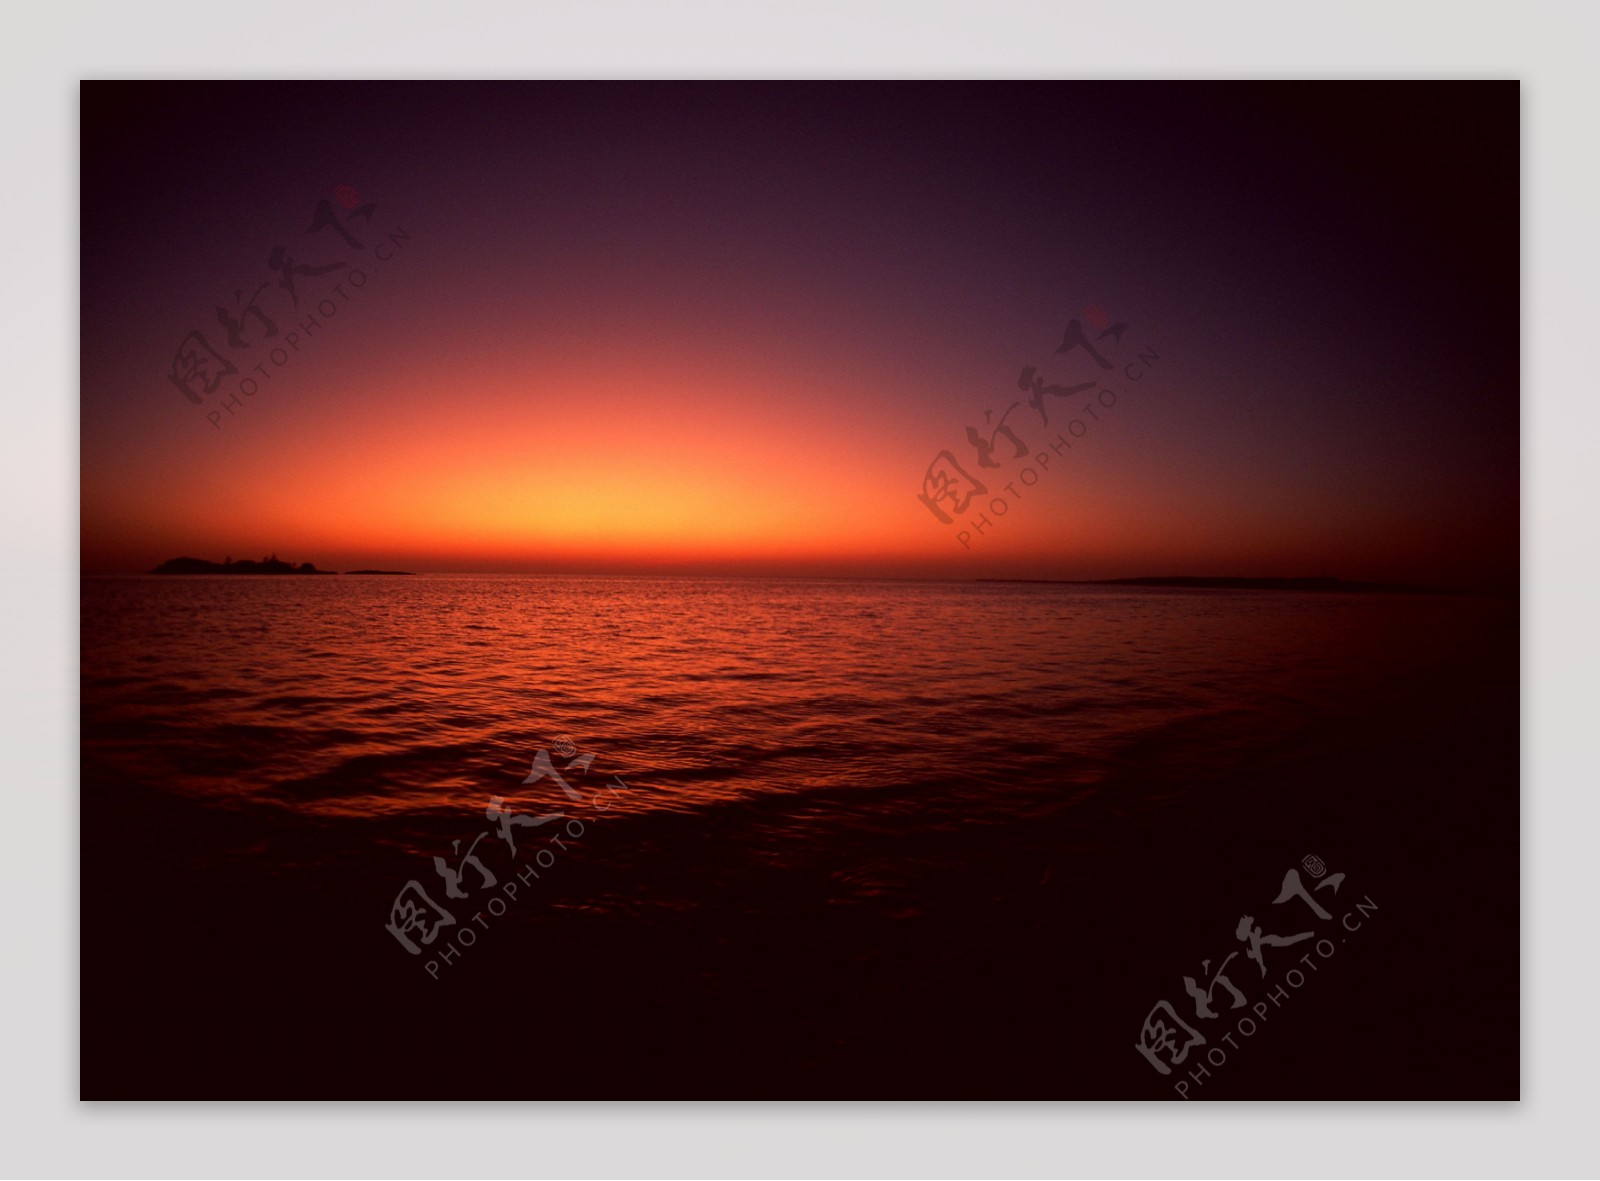 夕阳下的大海风景图片